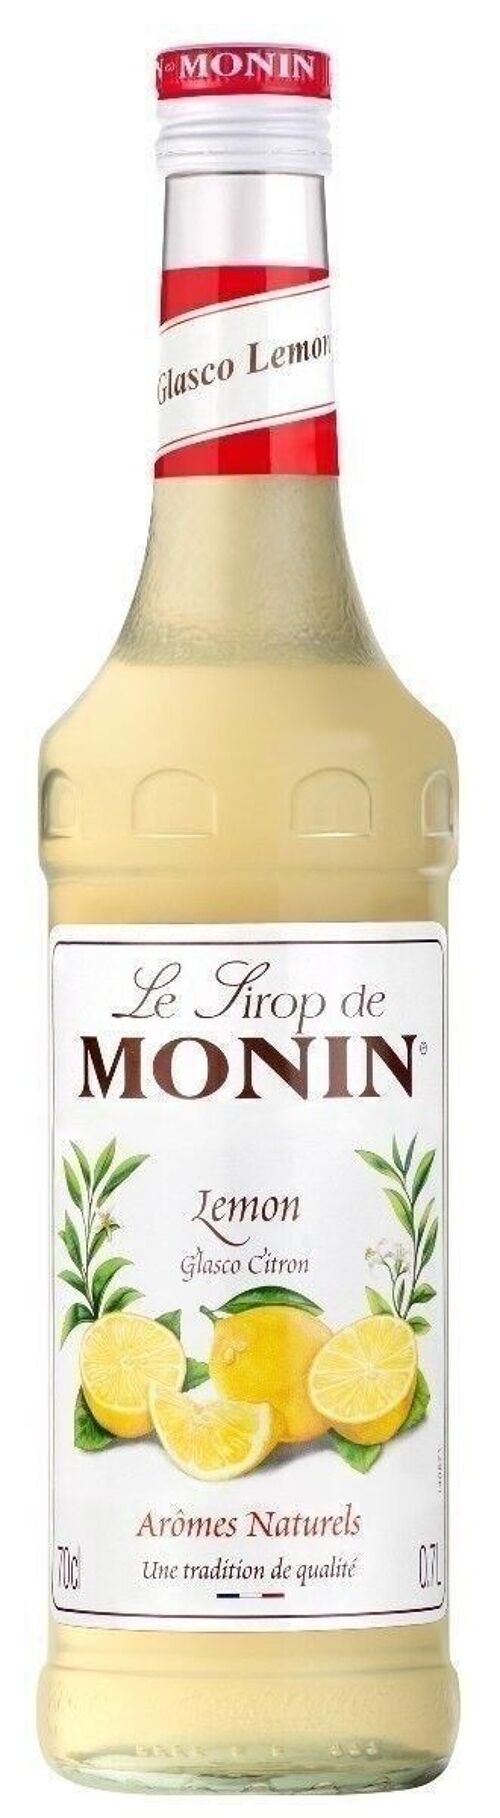 Sirop de Glasco Citron MONIN - Arômes naturels - 70cl